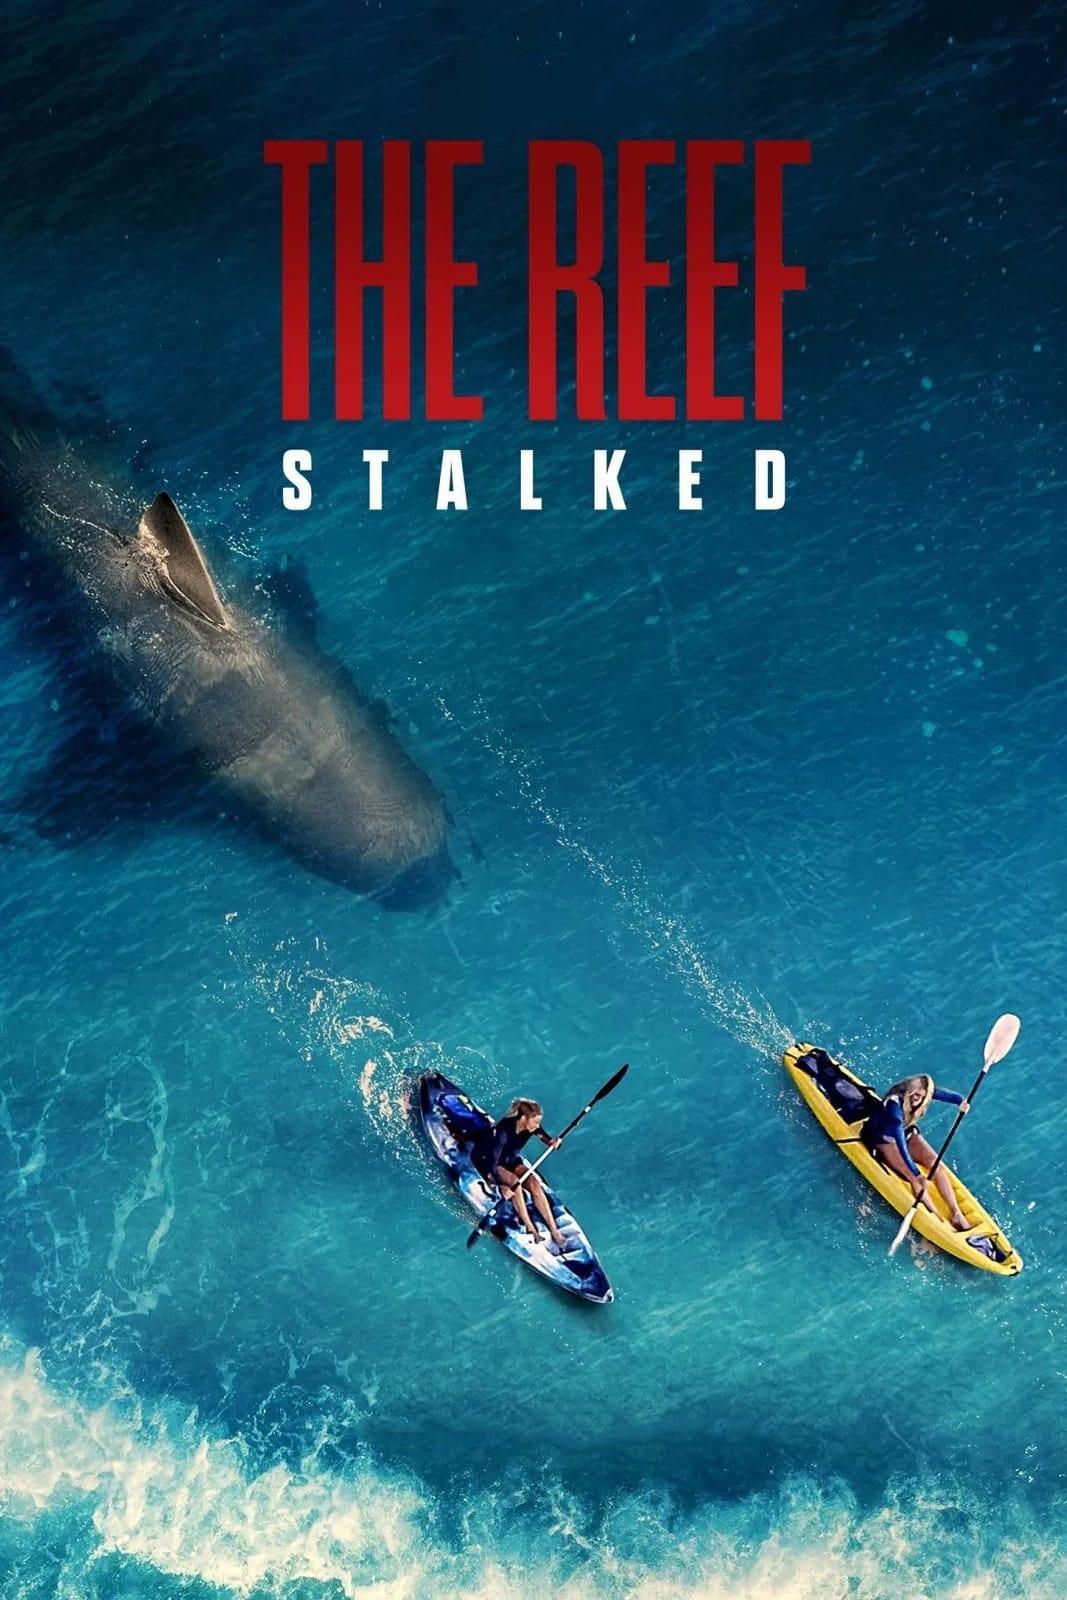 The Reef: Stalked (El arrecife: Atrapadas) poster